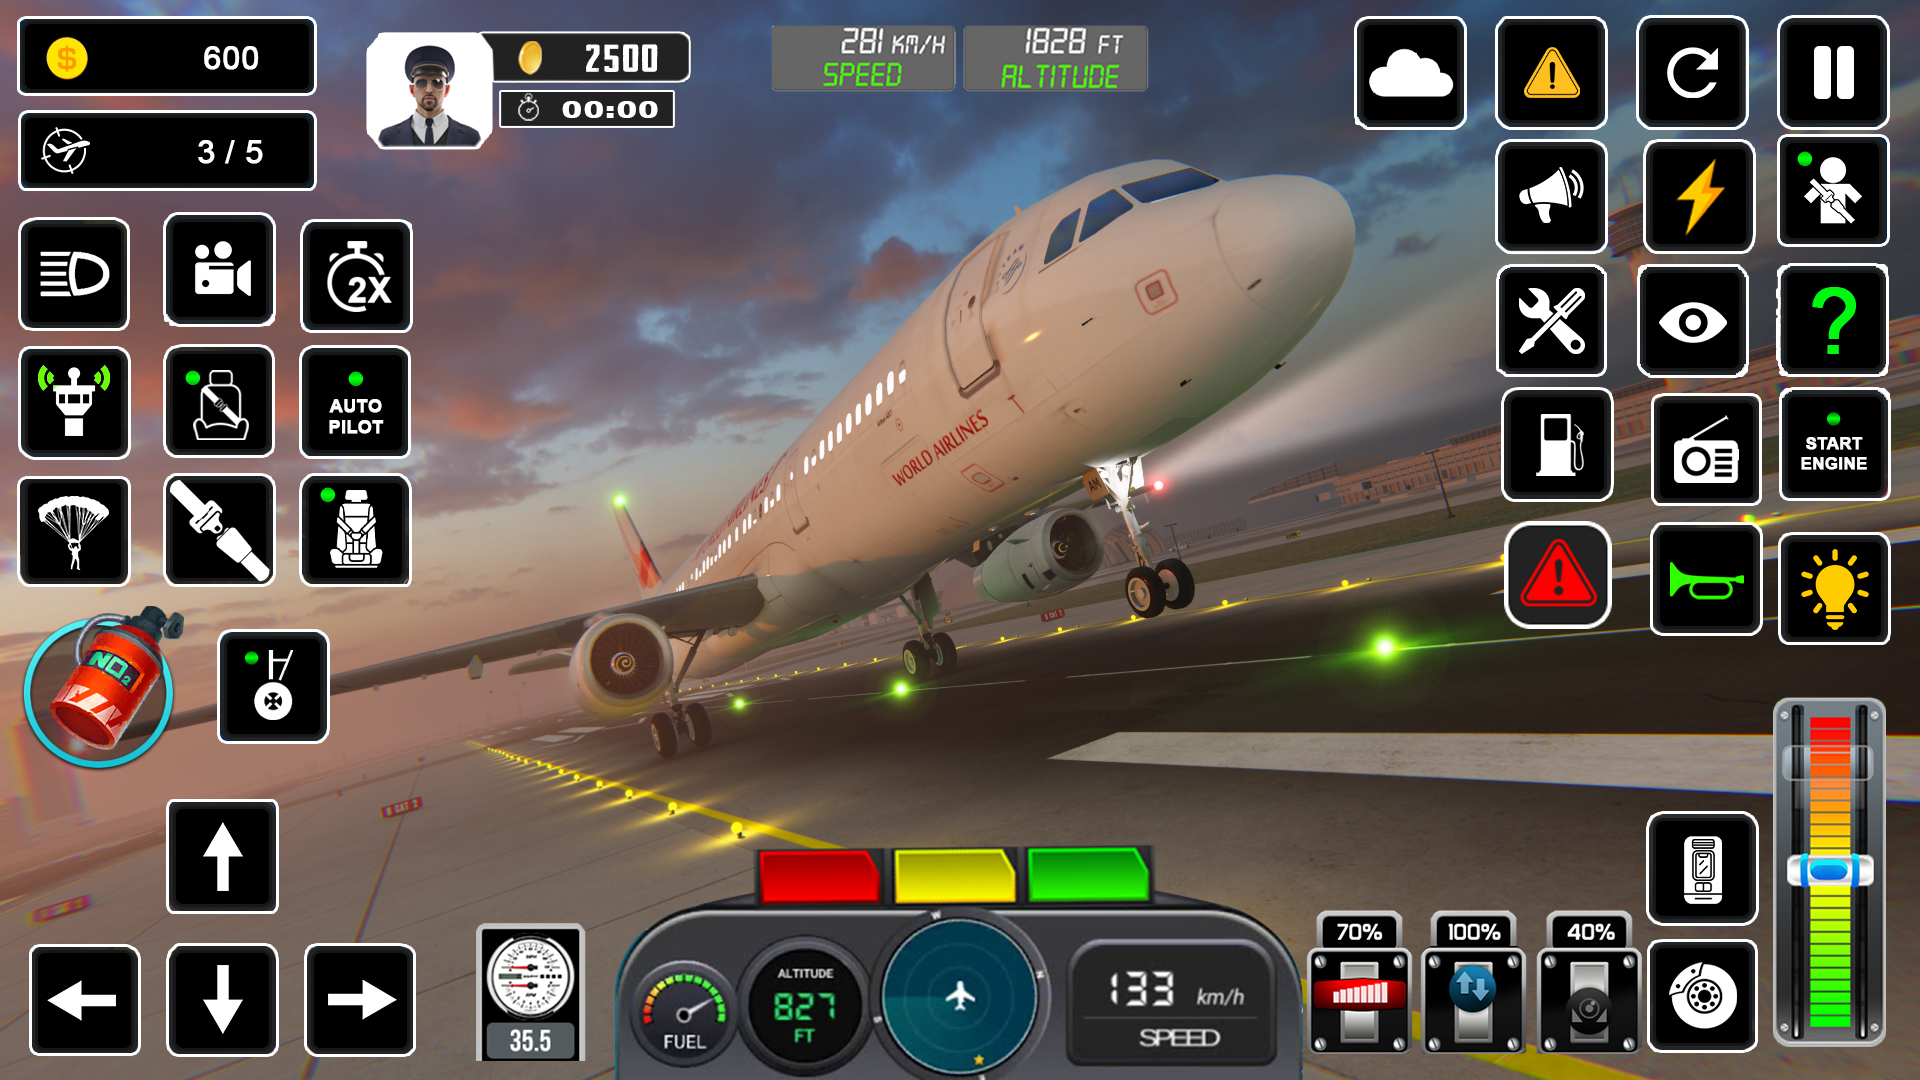 Screenshot 1 of Game Simulator Penerbangan Pilot 6.2.2